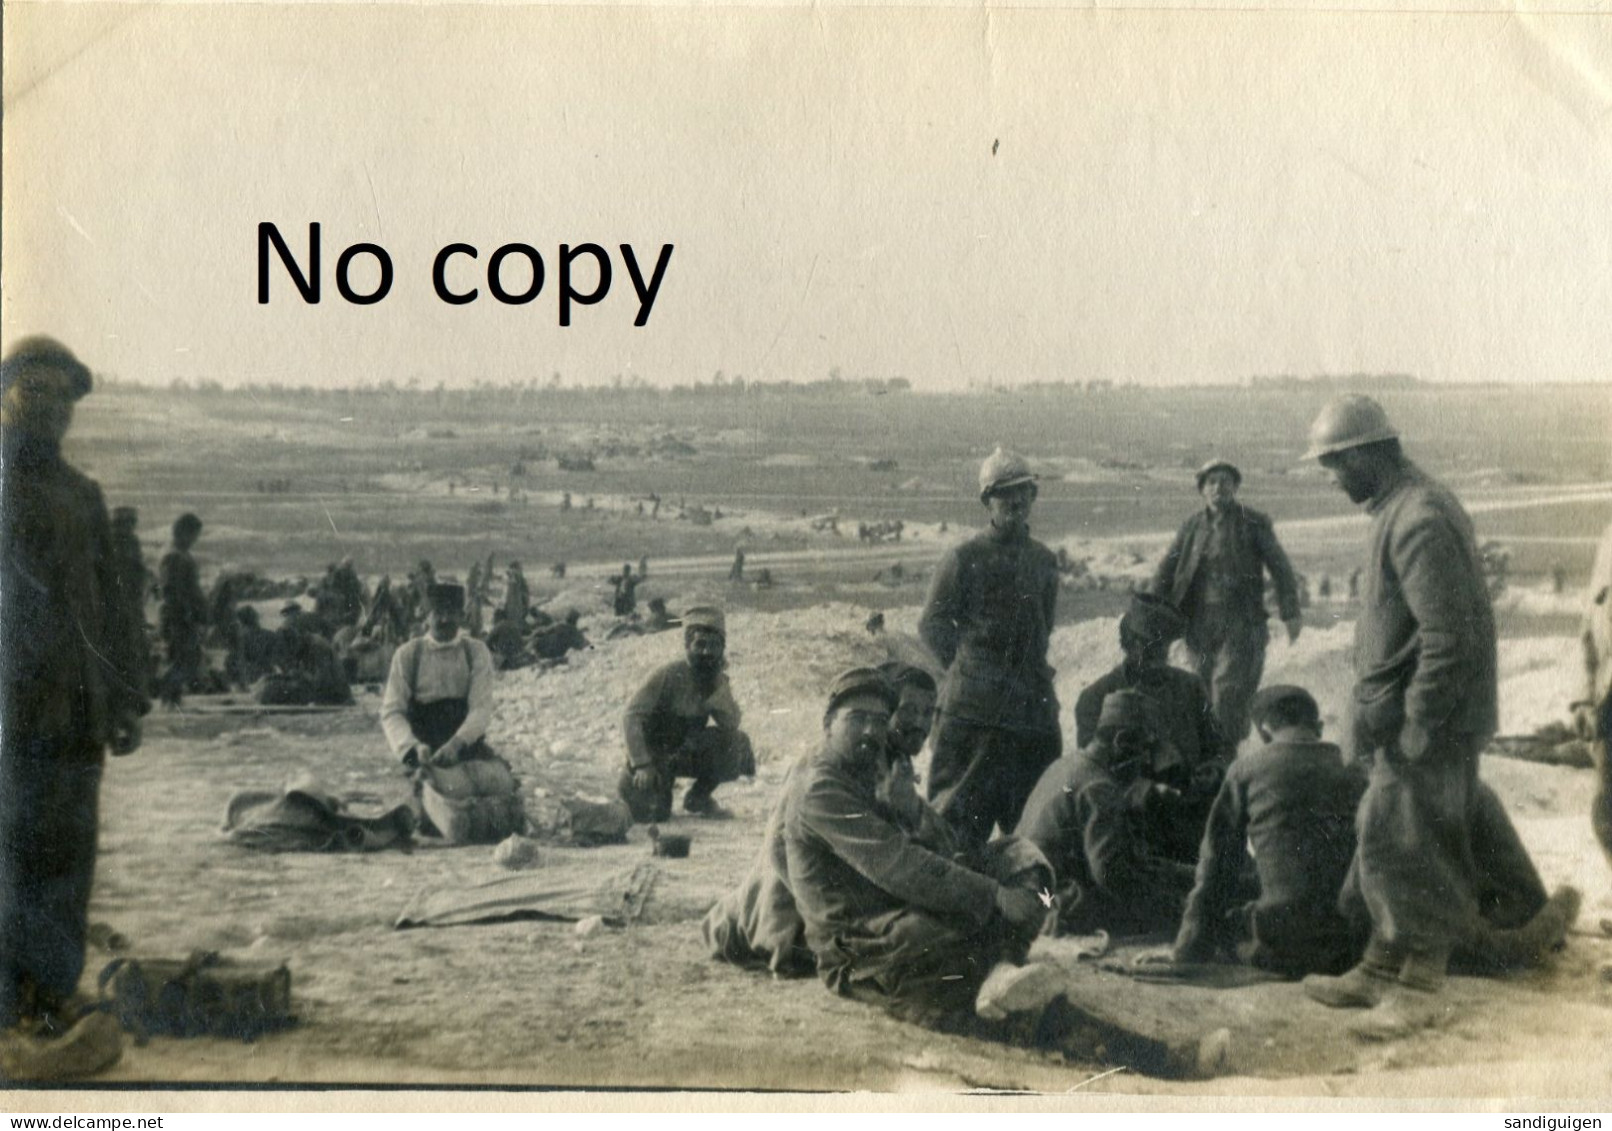 PHOTO FRANCAISE - POILUS EN CANTONNEMENT EN PLEIN AIR A BUSSY LE CHATEAU PRES DE LA CHEPPE MARNE GUERRE 1914 1918 - Guerre, Militaire